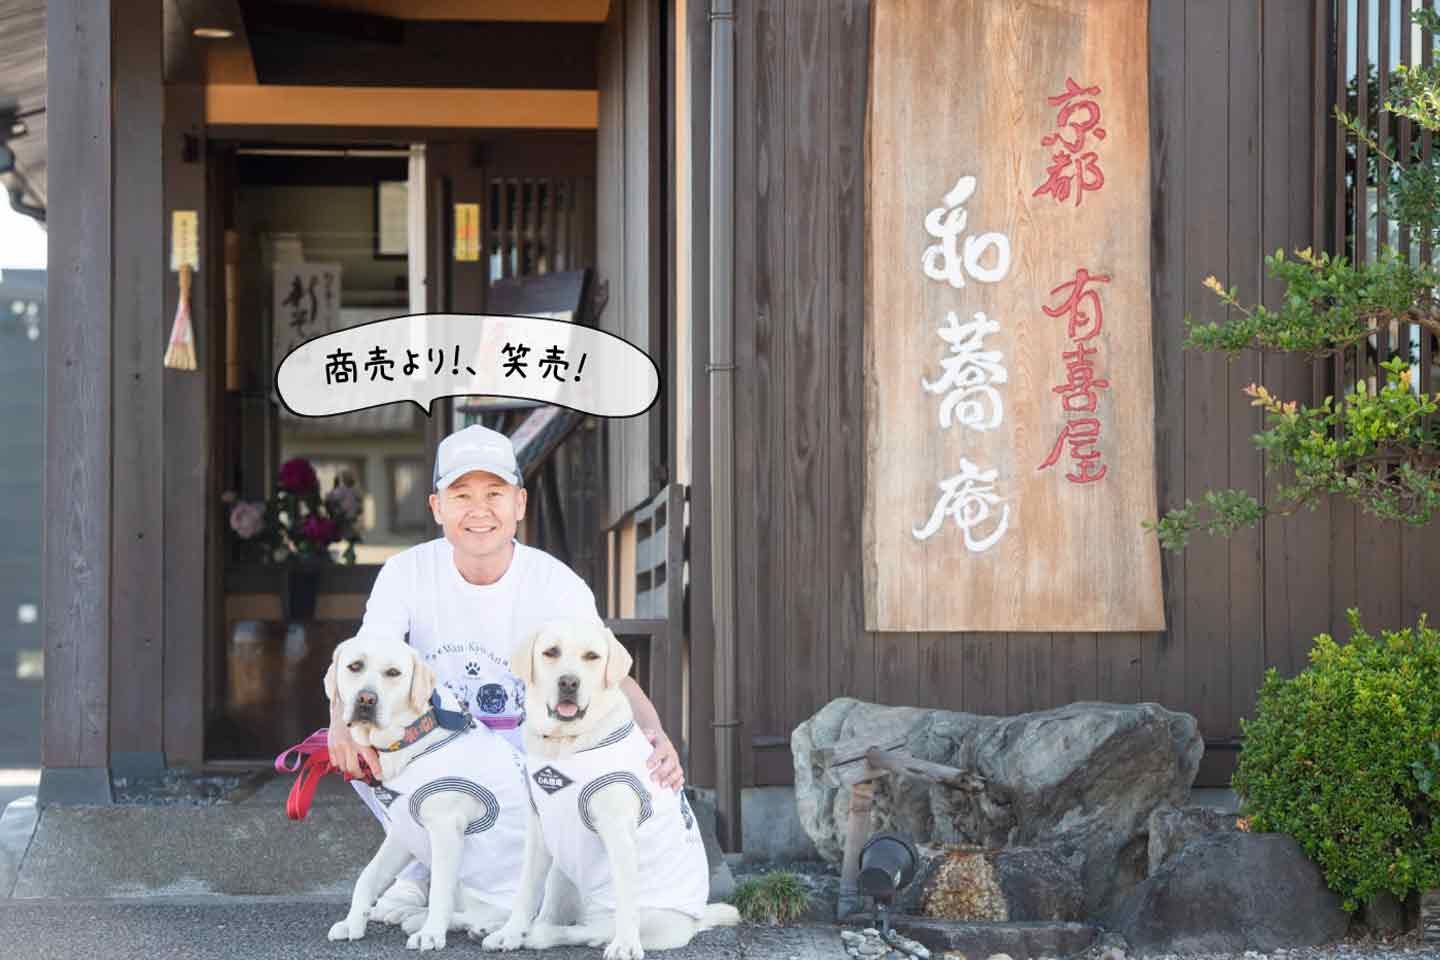 「儲けなんて考えてない」犬連れ専用そば屋『わん蕎庵』を立ち上げた、老舗そば職人・古川さんの理念